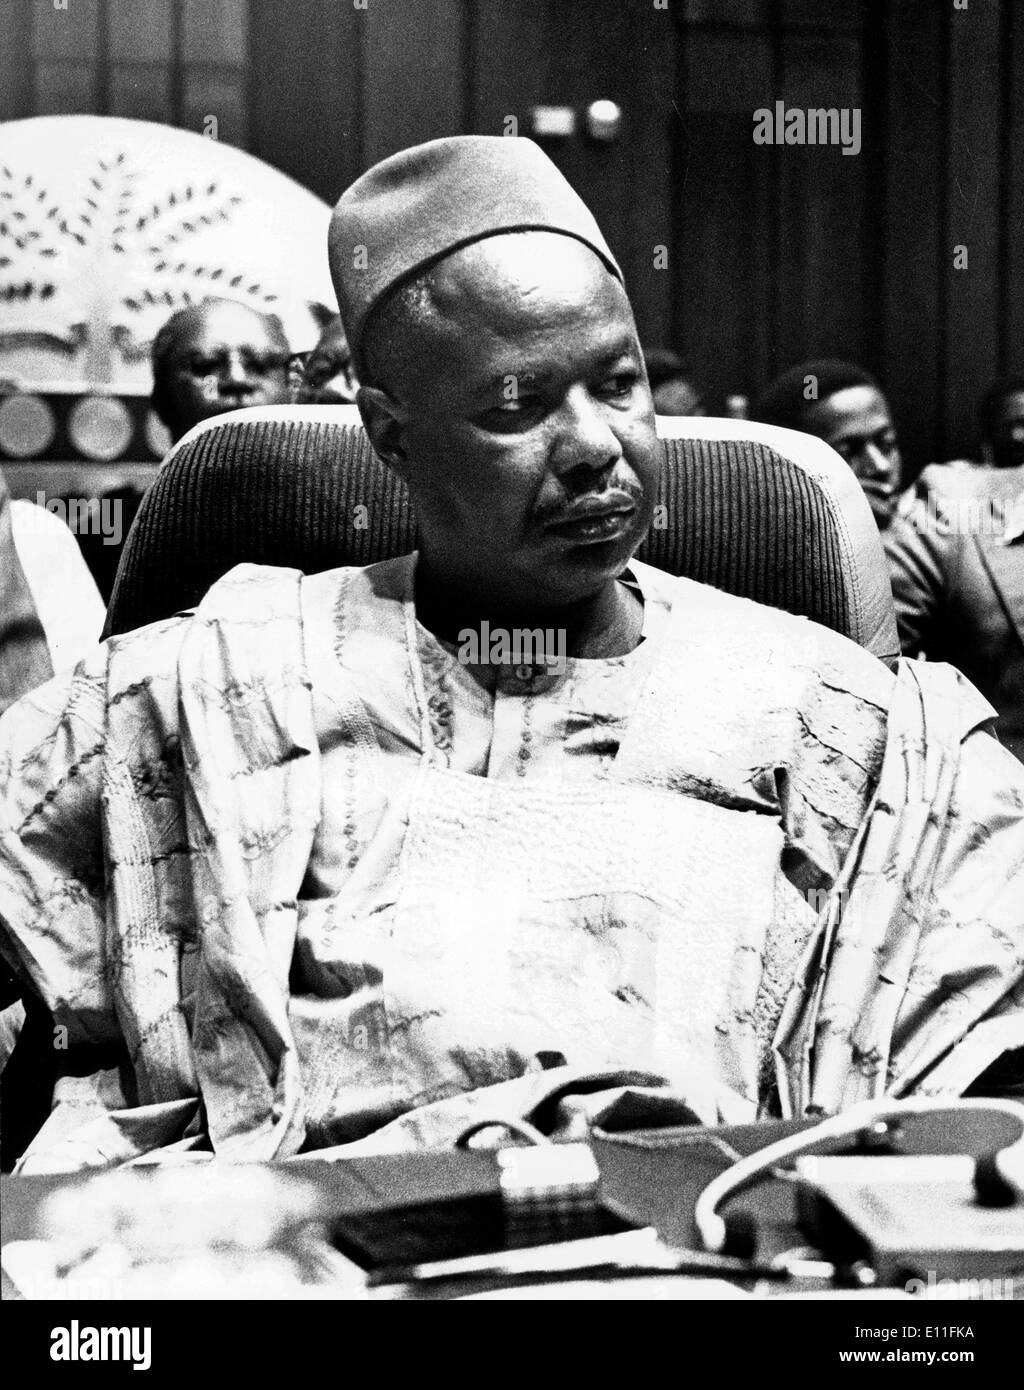 Jul 15, 1977 ; Yaoundé, Cameroun ; AHMADOU BABATOURA AHIDJO le 24 août 1924 Le 30 novembre 1989 était le président du Cameroun de 1960 à 1982, lorsque le Cameroun a obtenu son indépendance en 1960. Il a été réélu en 1965, 1970, 1975 et 1980. Il a eu une rébellion dans les années 1960. Au début des années 1970, il a créé une constitution impopulaire qui a mis fin à l'autonomie du Cameroun britannique et mis en règle unitaire. Bien que plusieurs de ses actions ont été dictatorial, son pays est devenu un des plus stables en Afrique. Banque D'Images